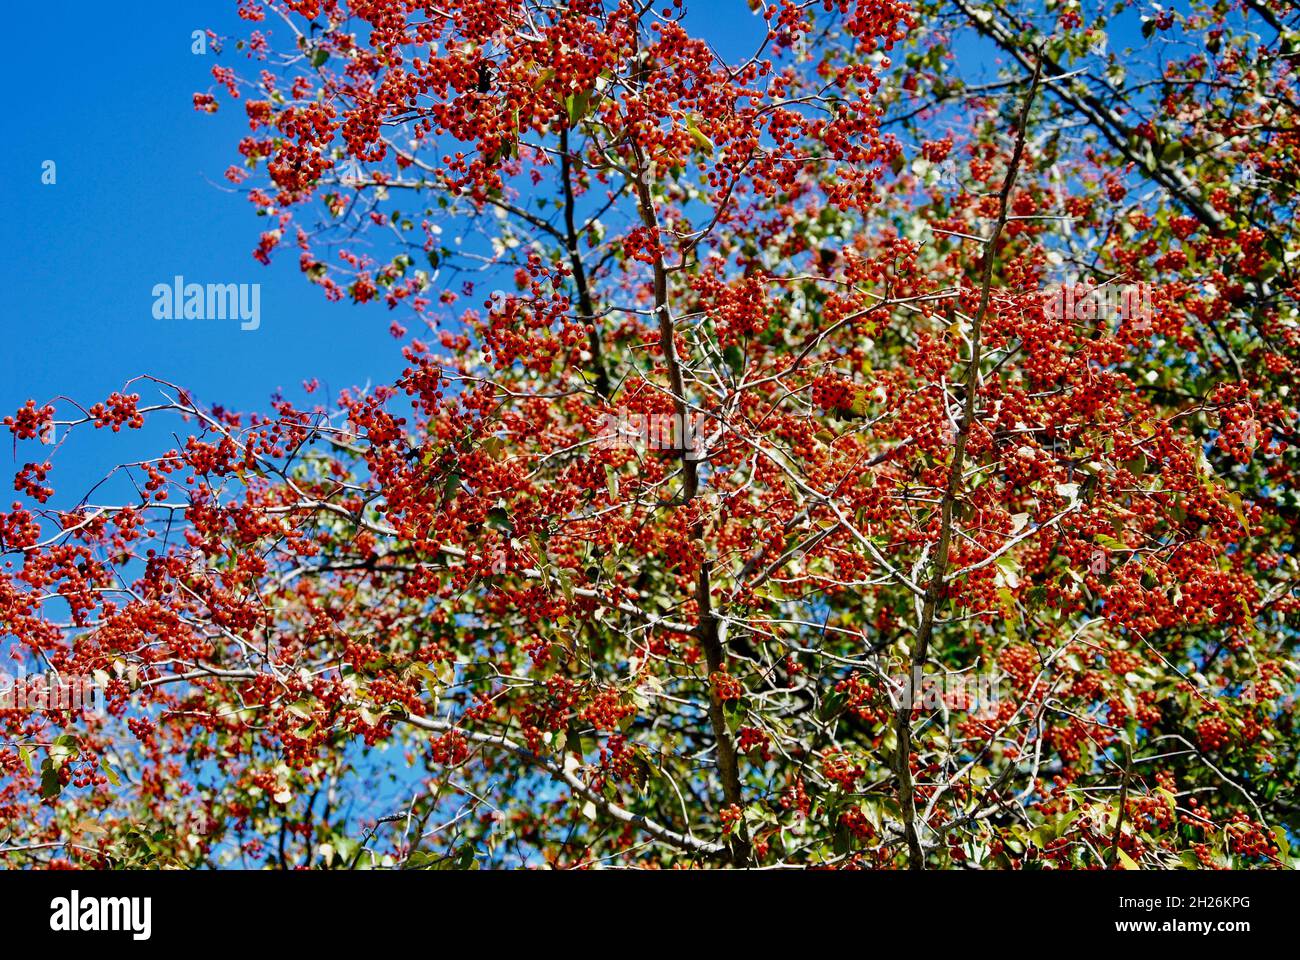 Baum mit bunten roten Beeren im Herbst in Nordost-Ohio Stockfoto